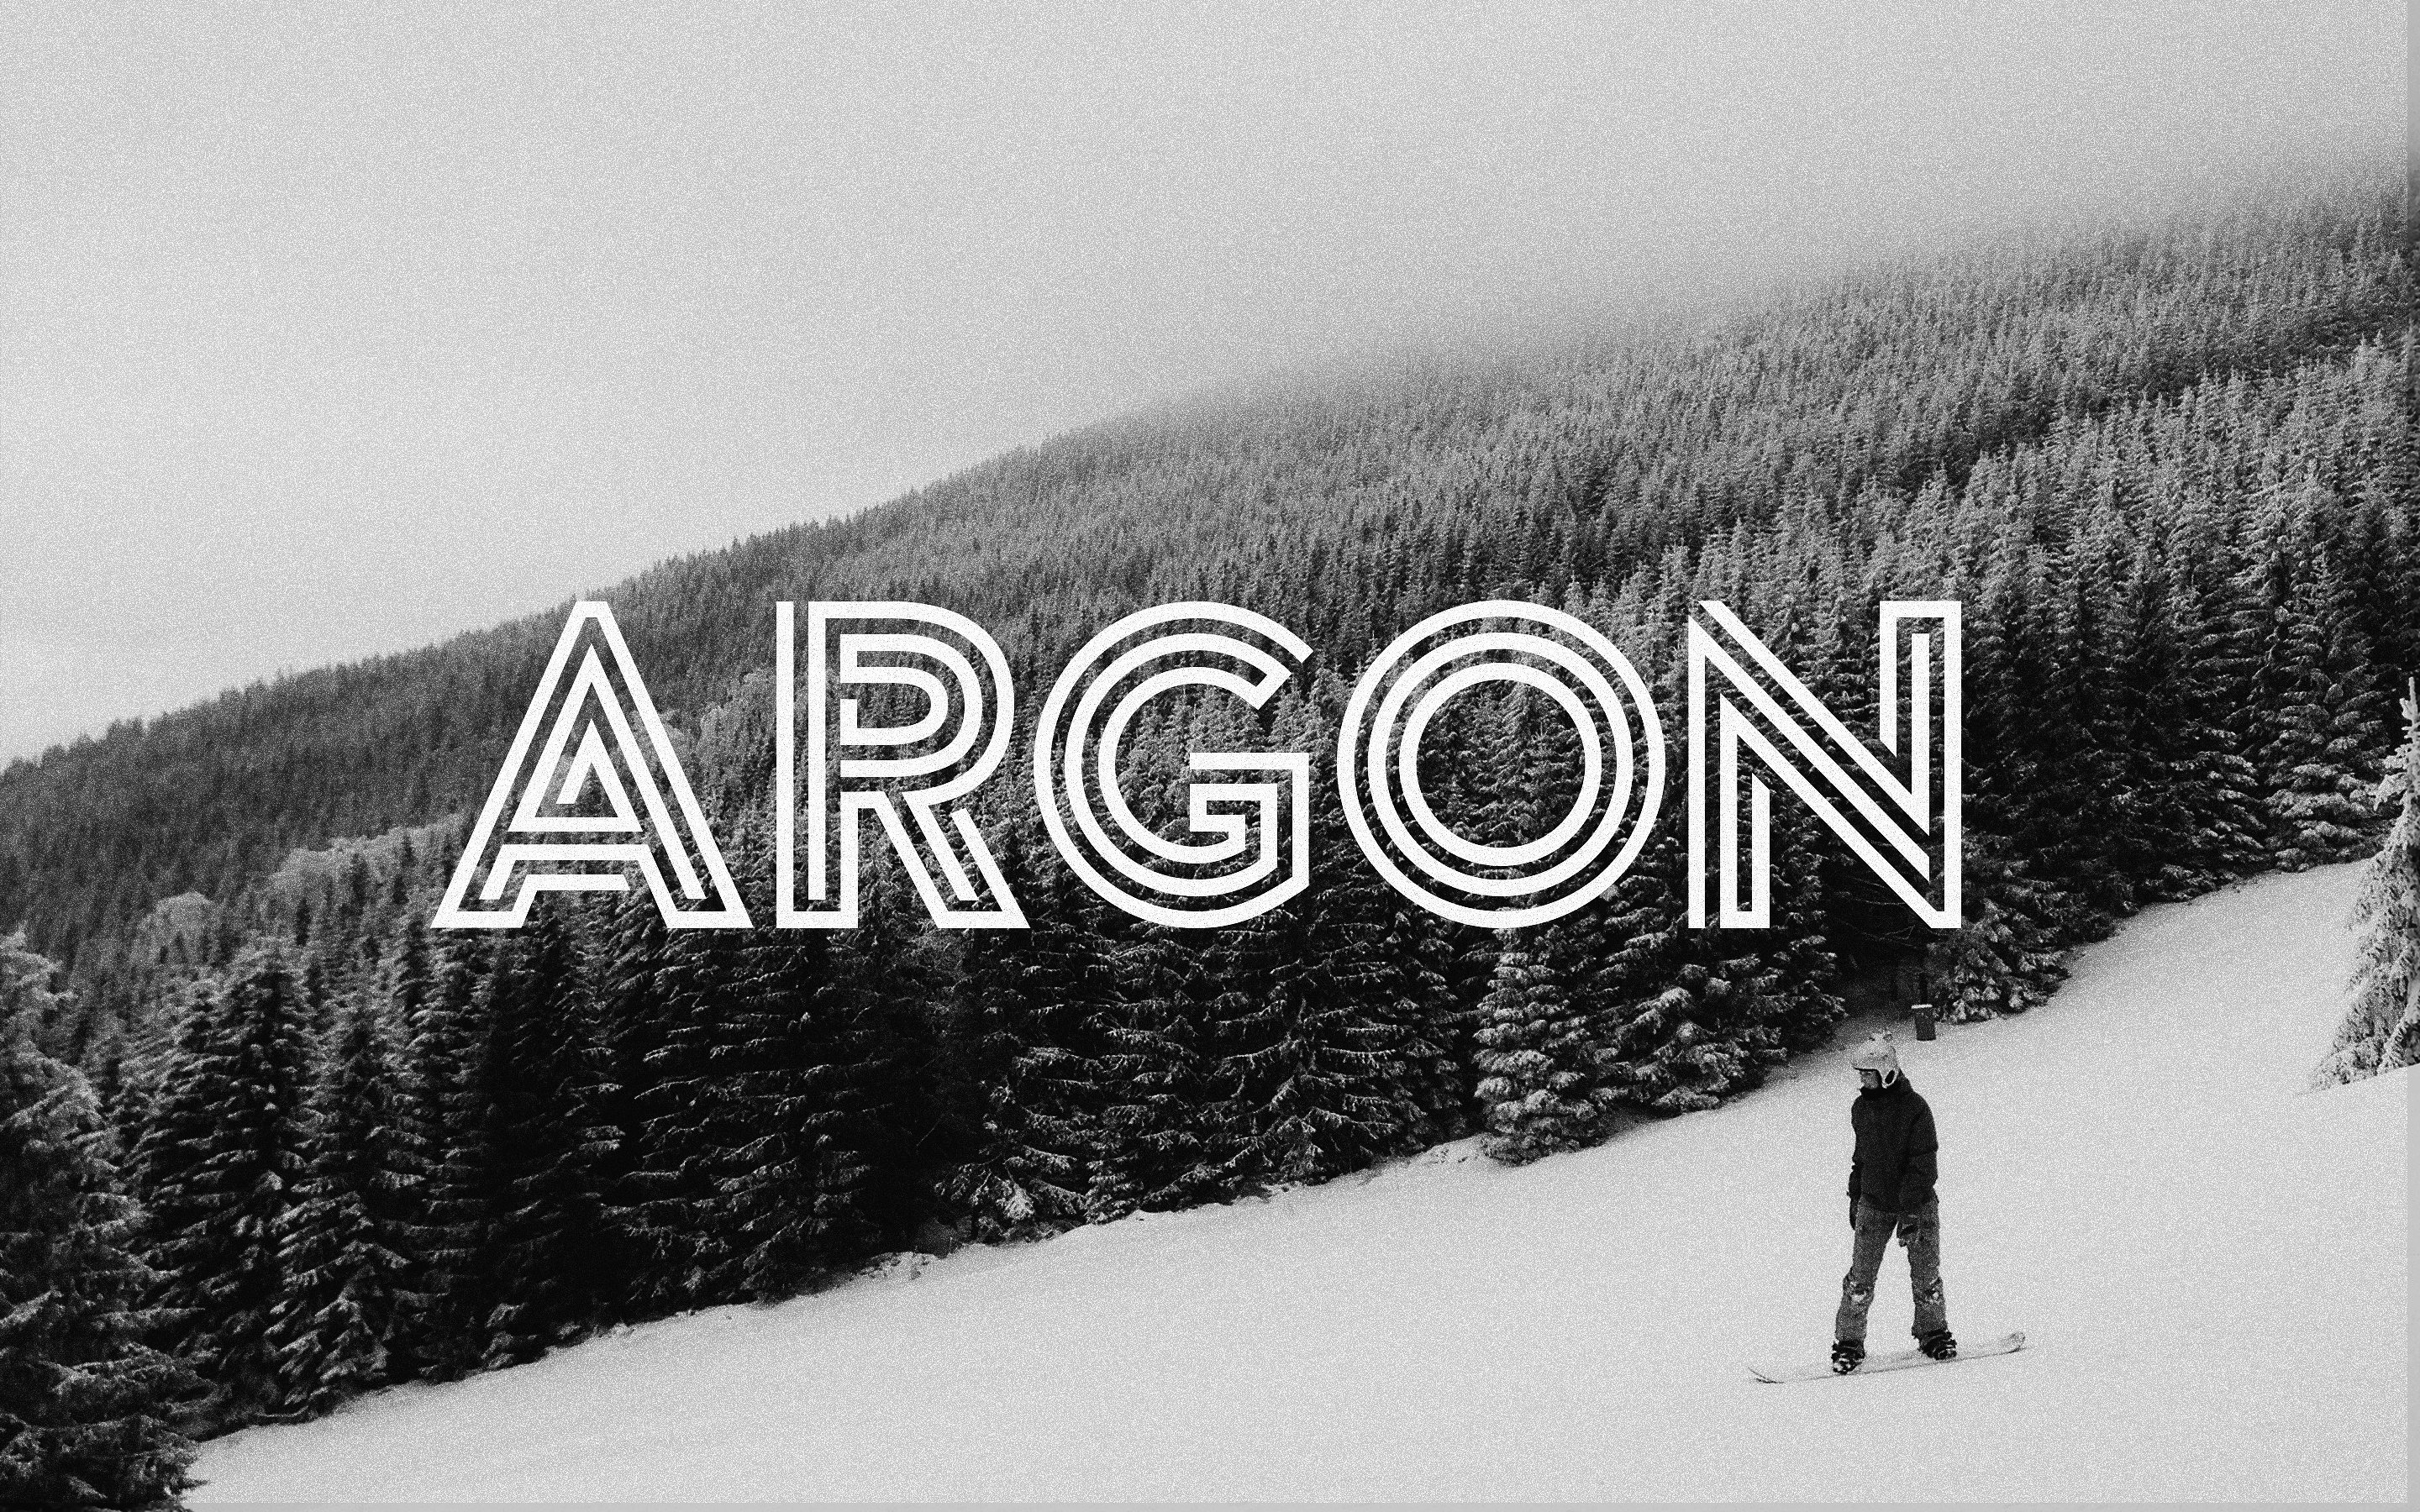 一款创意三线英文字体Argon Font (Full)